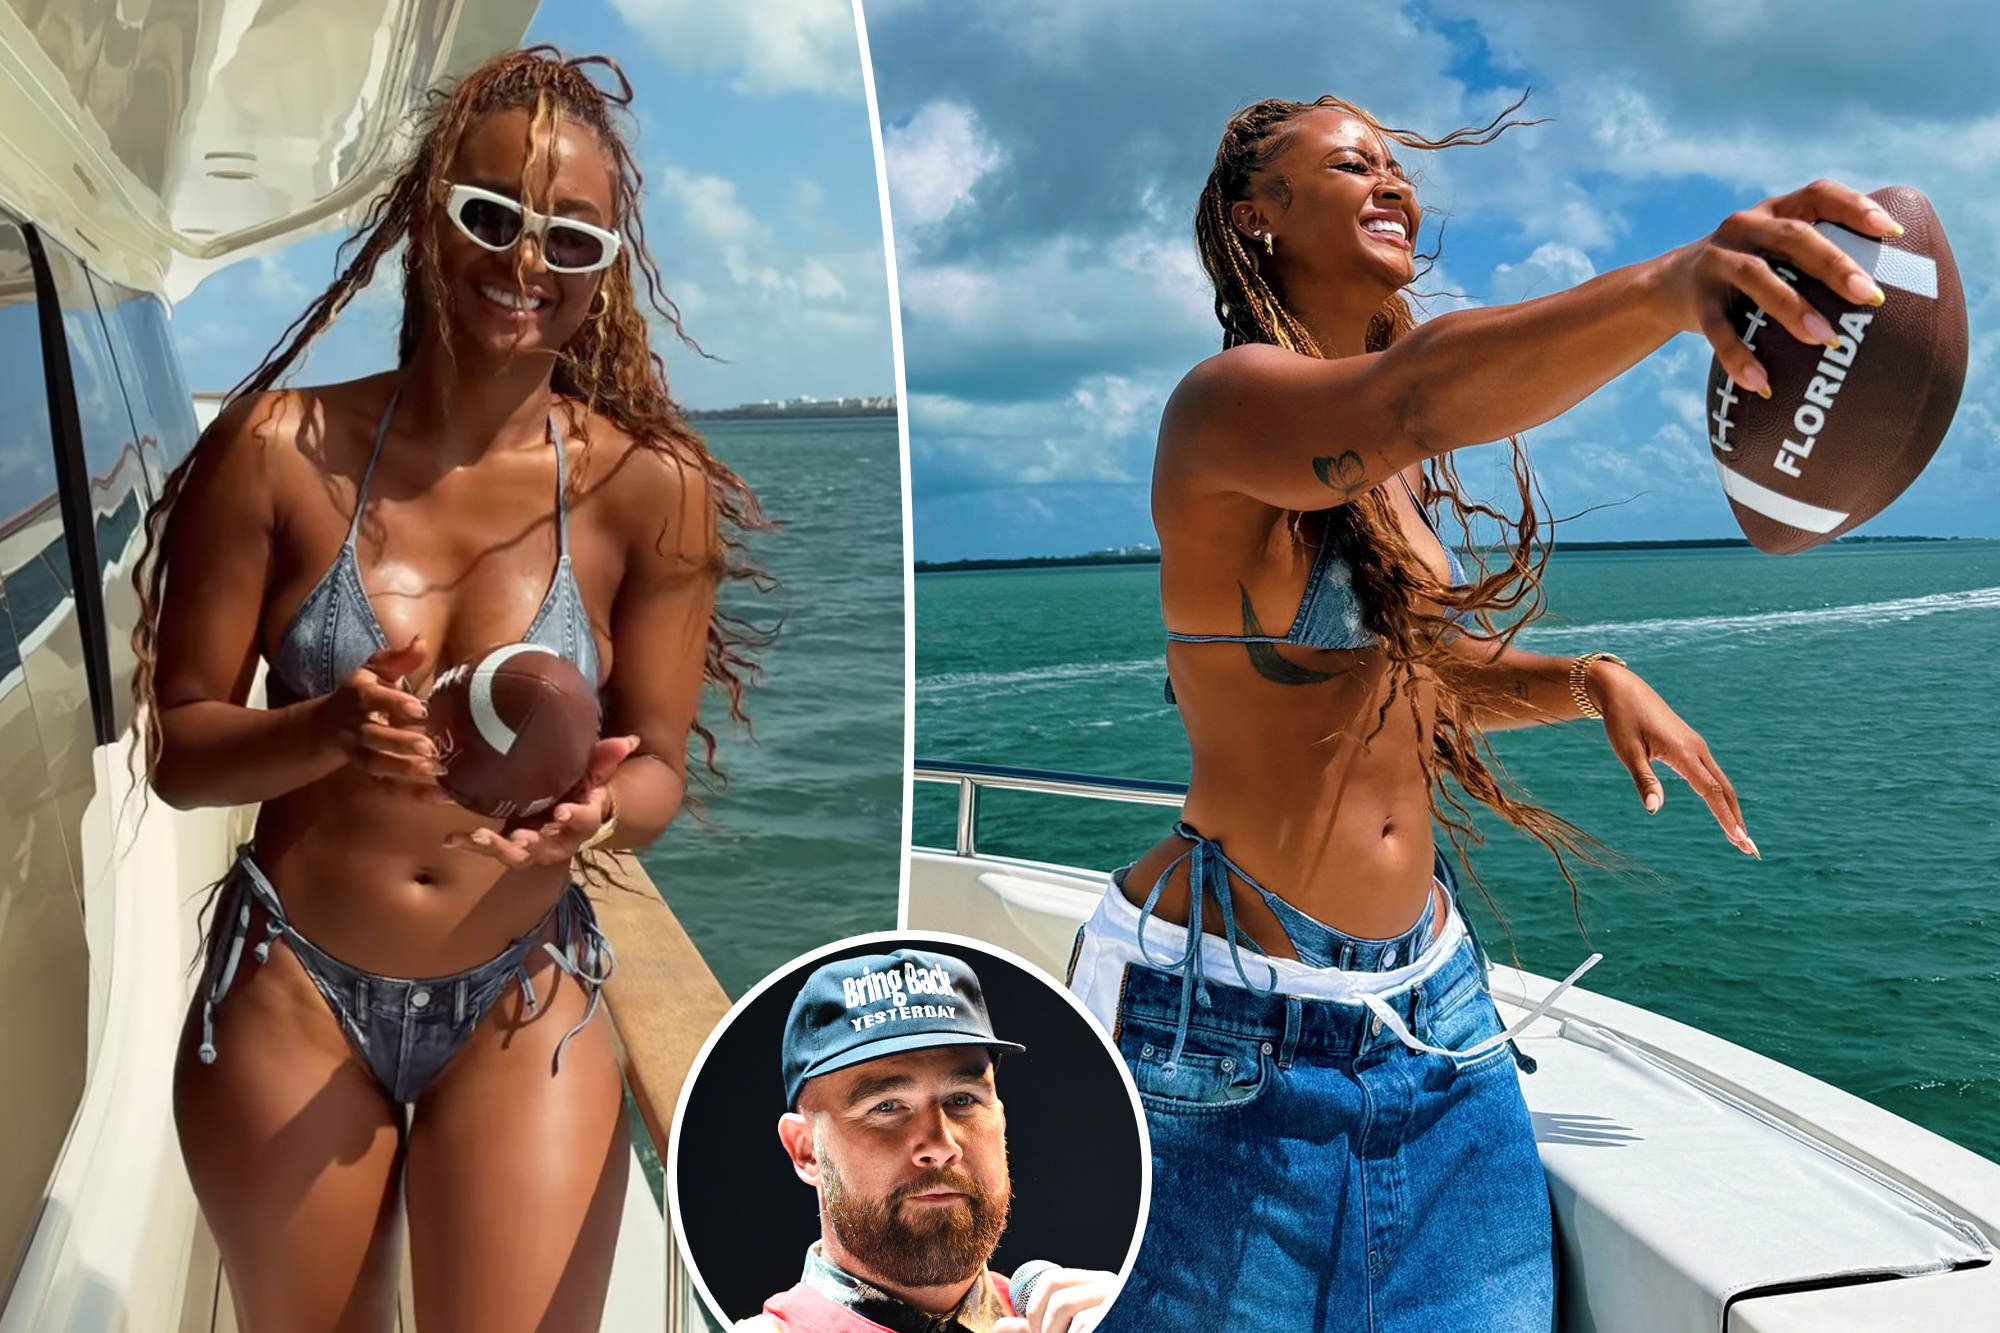 Kayla Nicole Displays Football Skills in Stylish Bikini on Boat Day